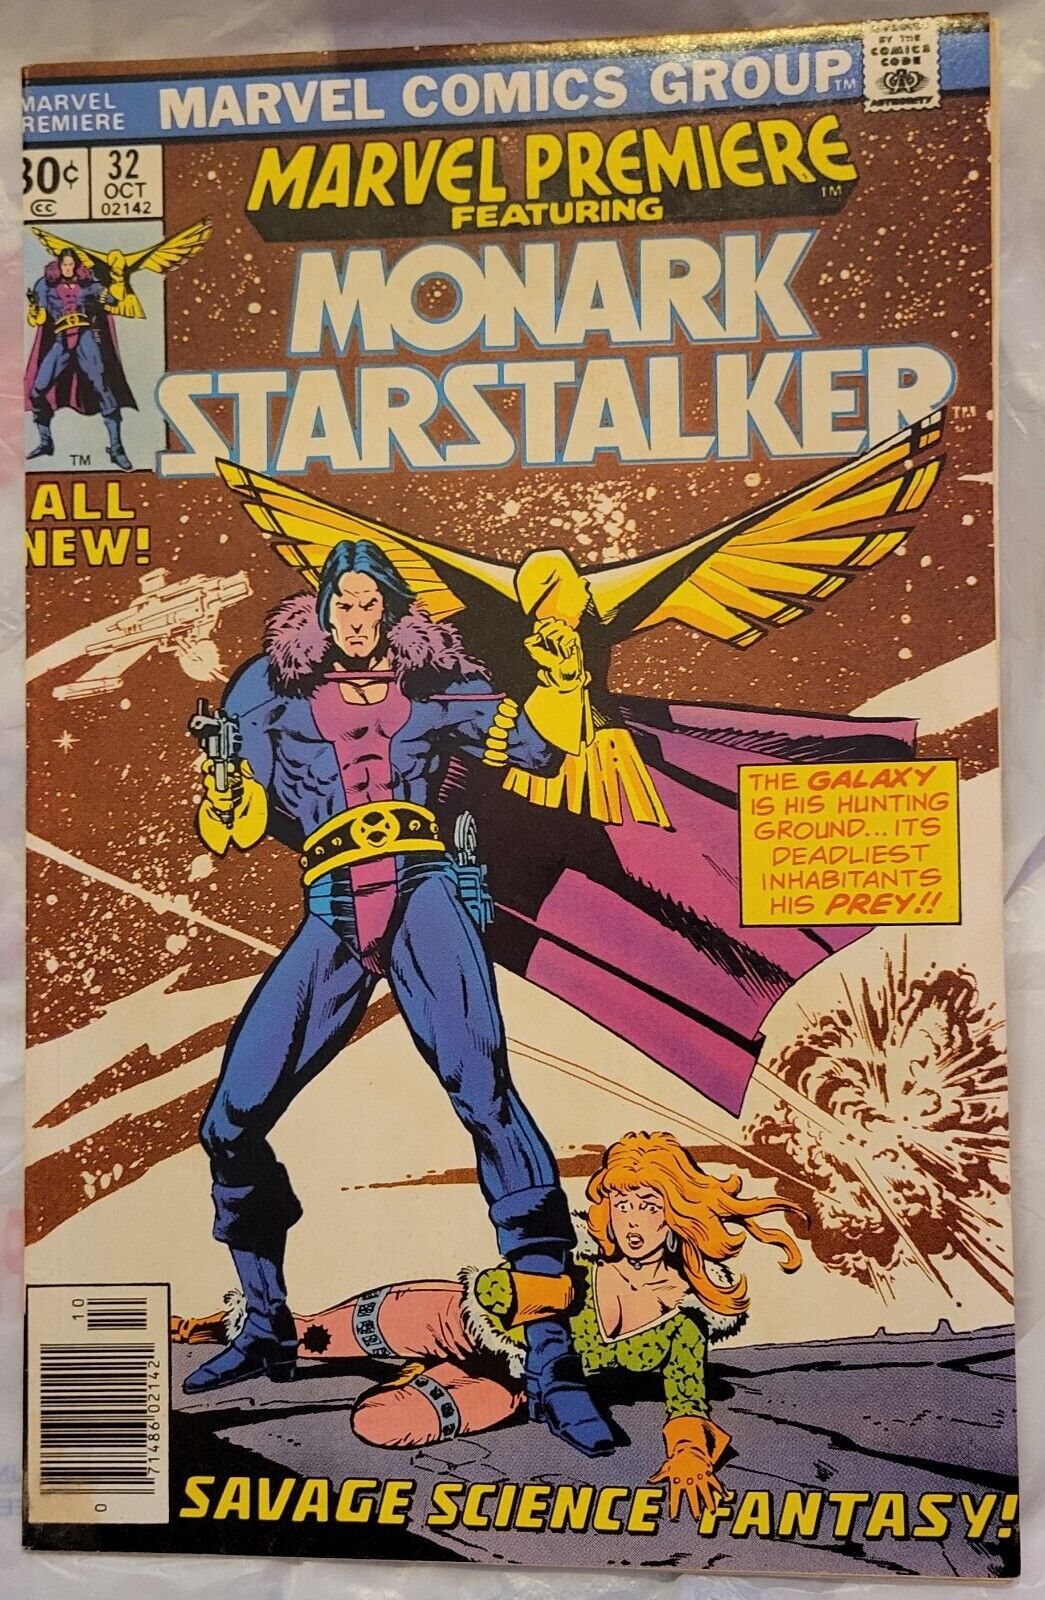 MARVEL PREMIERE #32 1976 Monark Starstalker 1st appearance Howard Chaykin